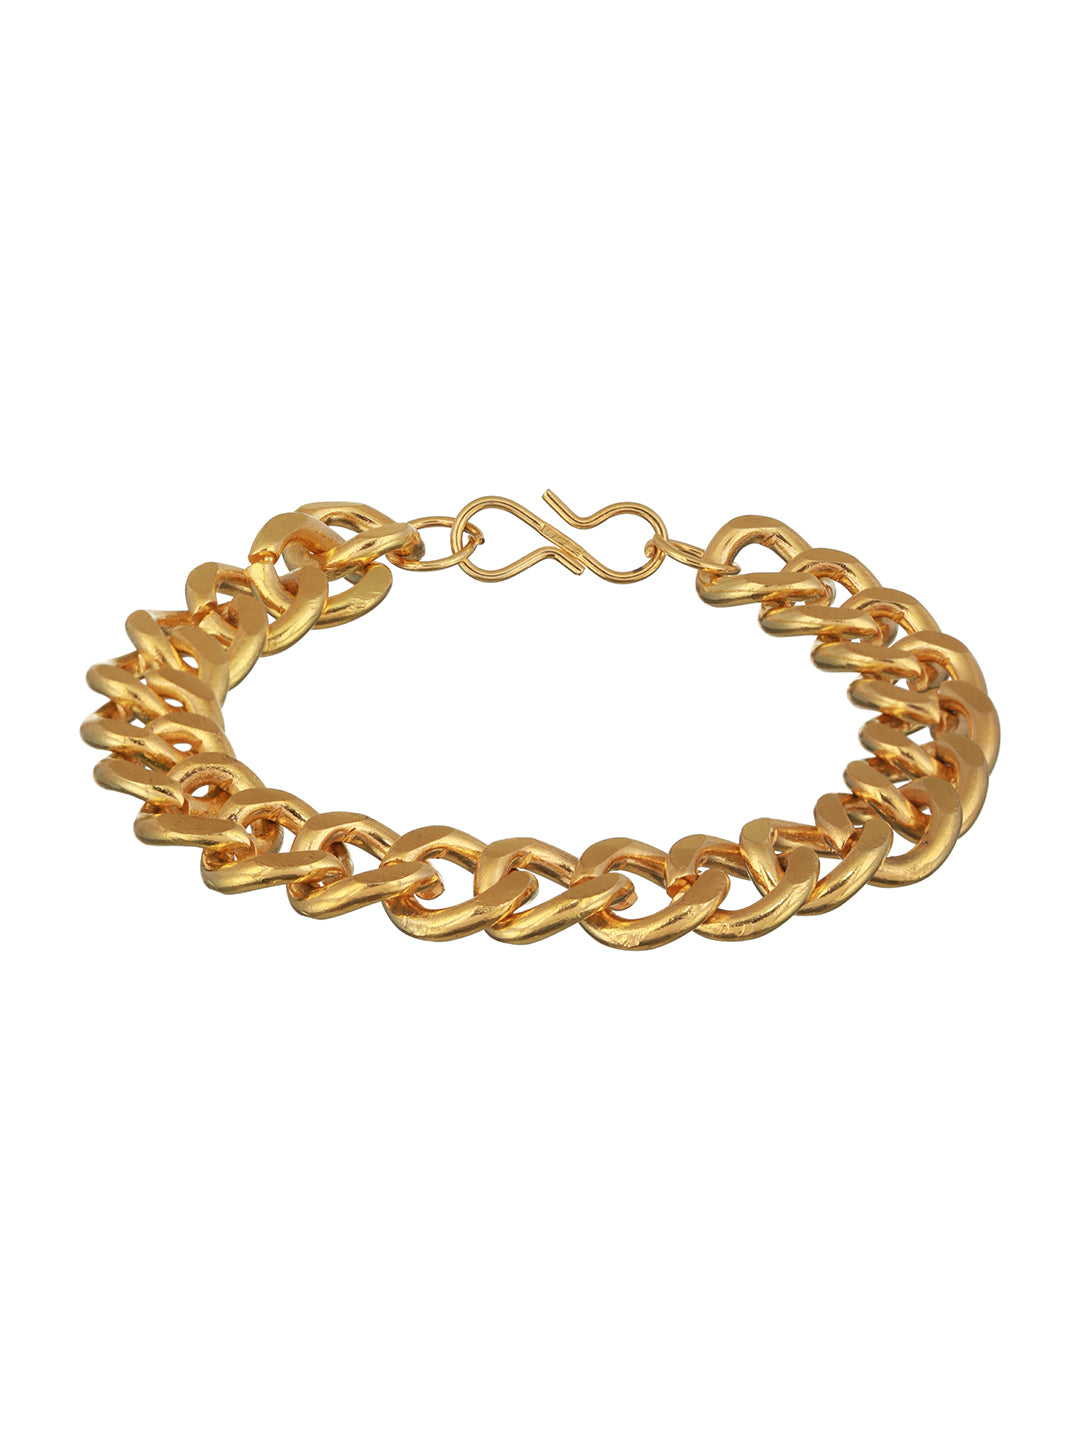 Silver Chain Bracelet King Stylish link Bracelet for Men & Boys Women  Girls. combo chain and